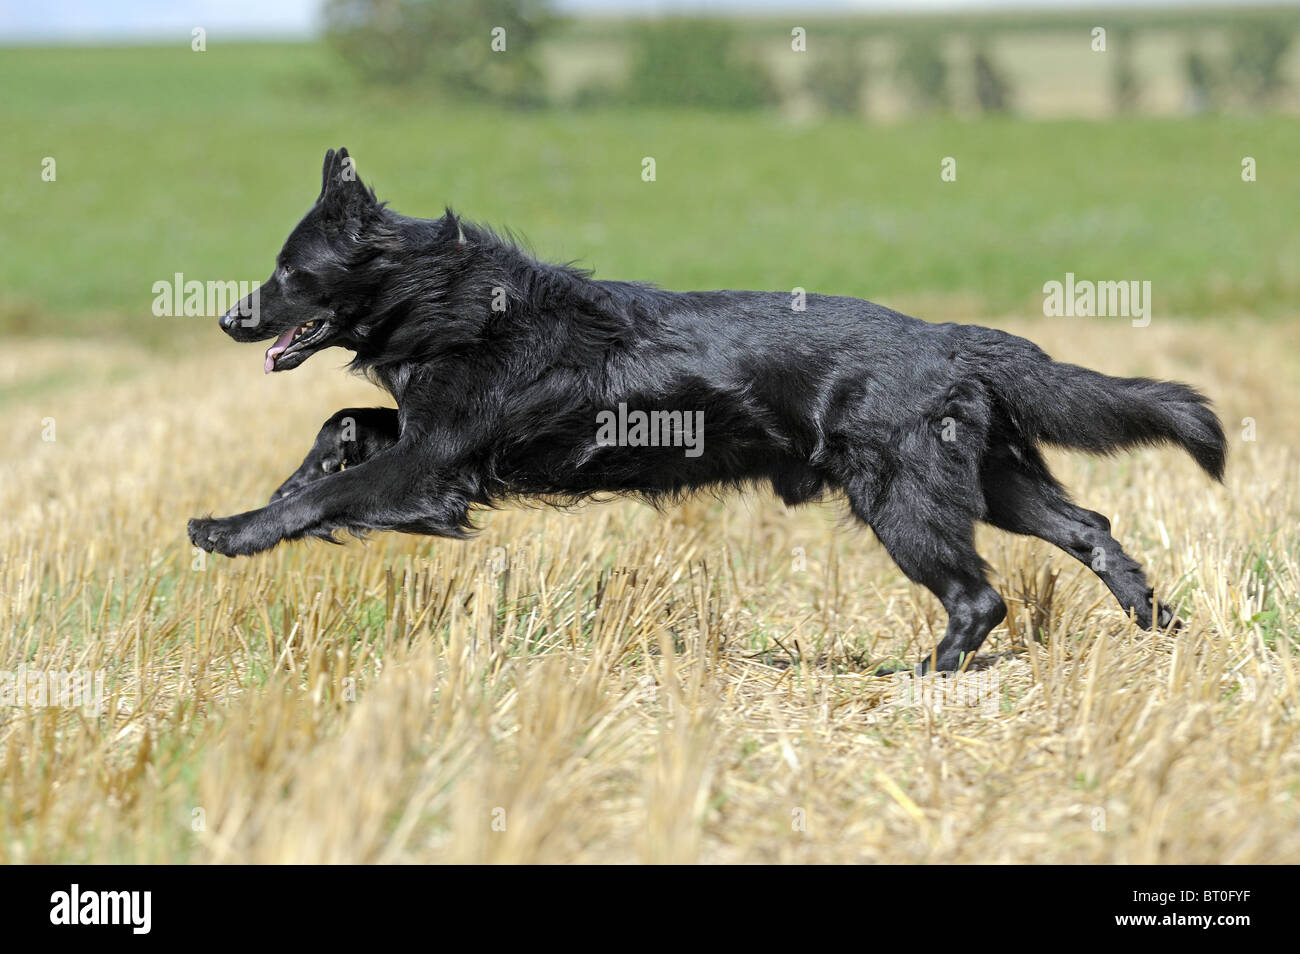 Berger allemand, l'alsacien (Canis lupus familiaris). Mâle noir s'exécutant sur un champ de chaumes. Banque D'Images